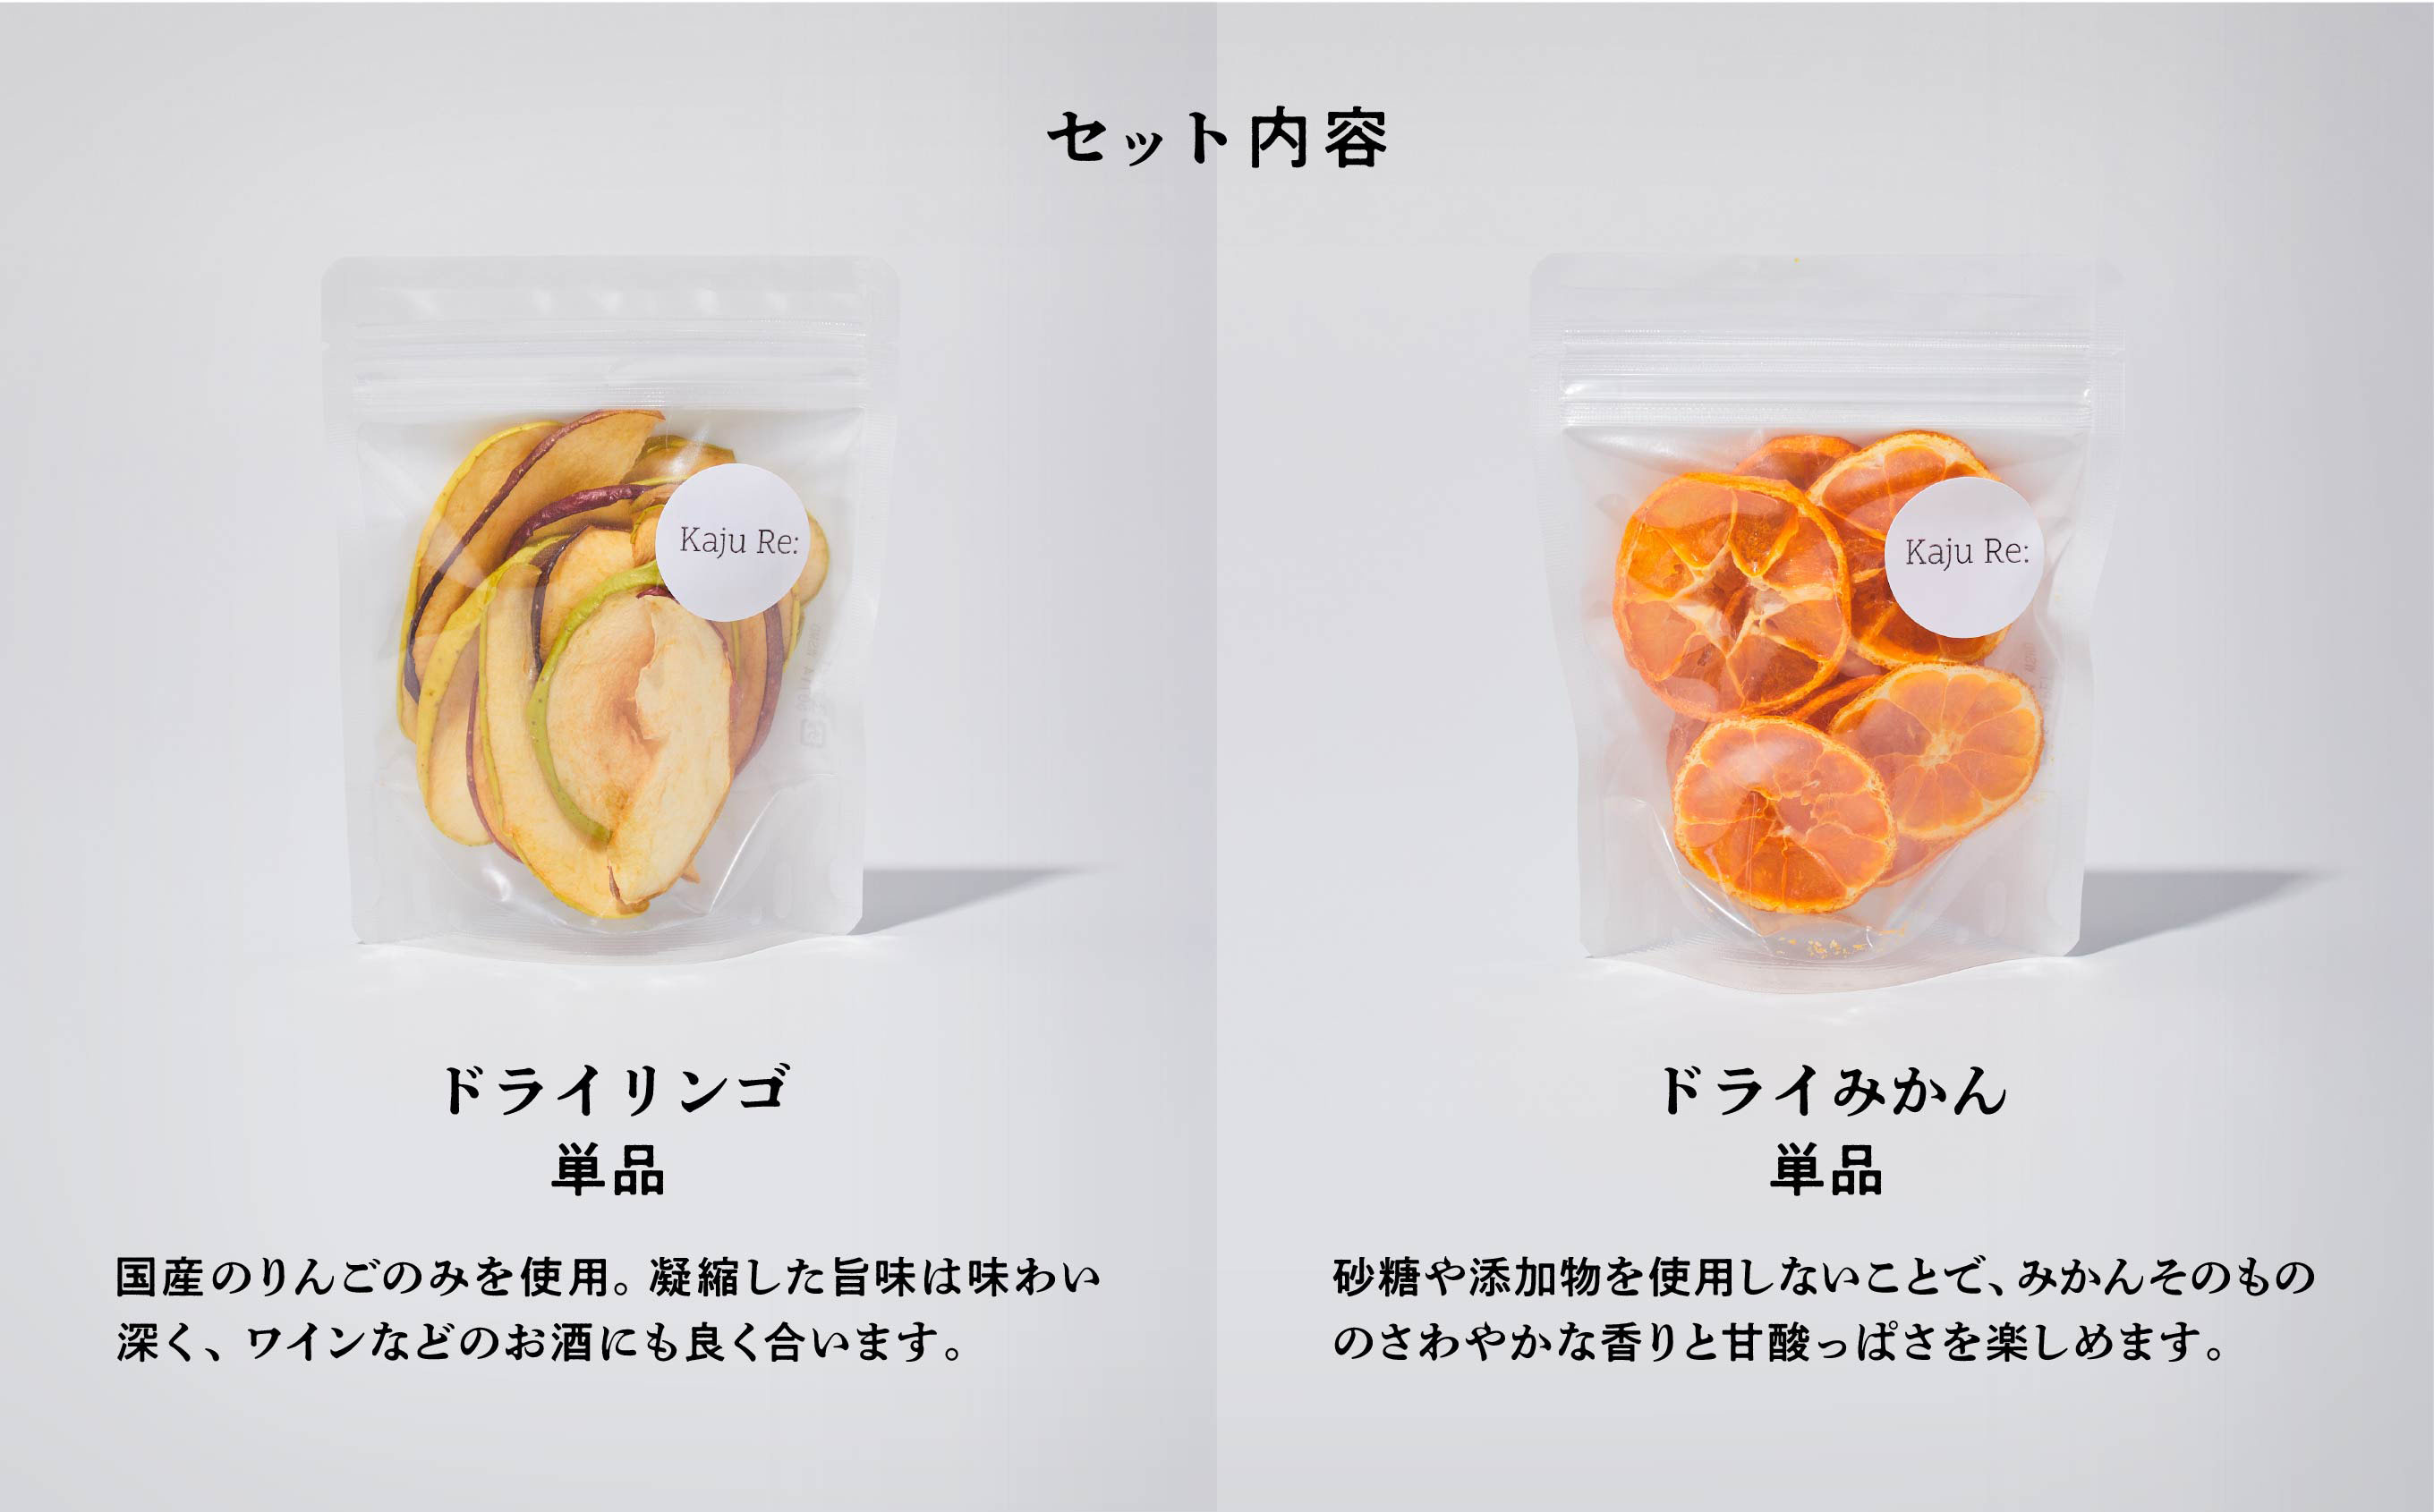 フルーツKaju Re:ドライフルーツ人気のフルーツ4袋セット  010185